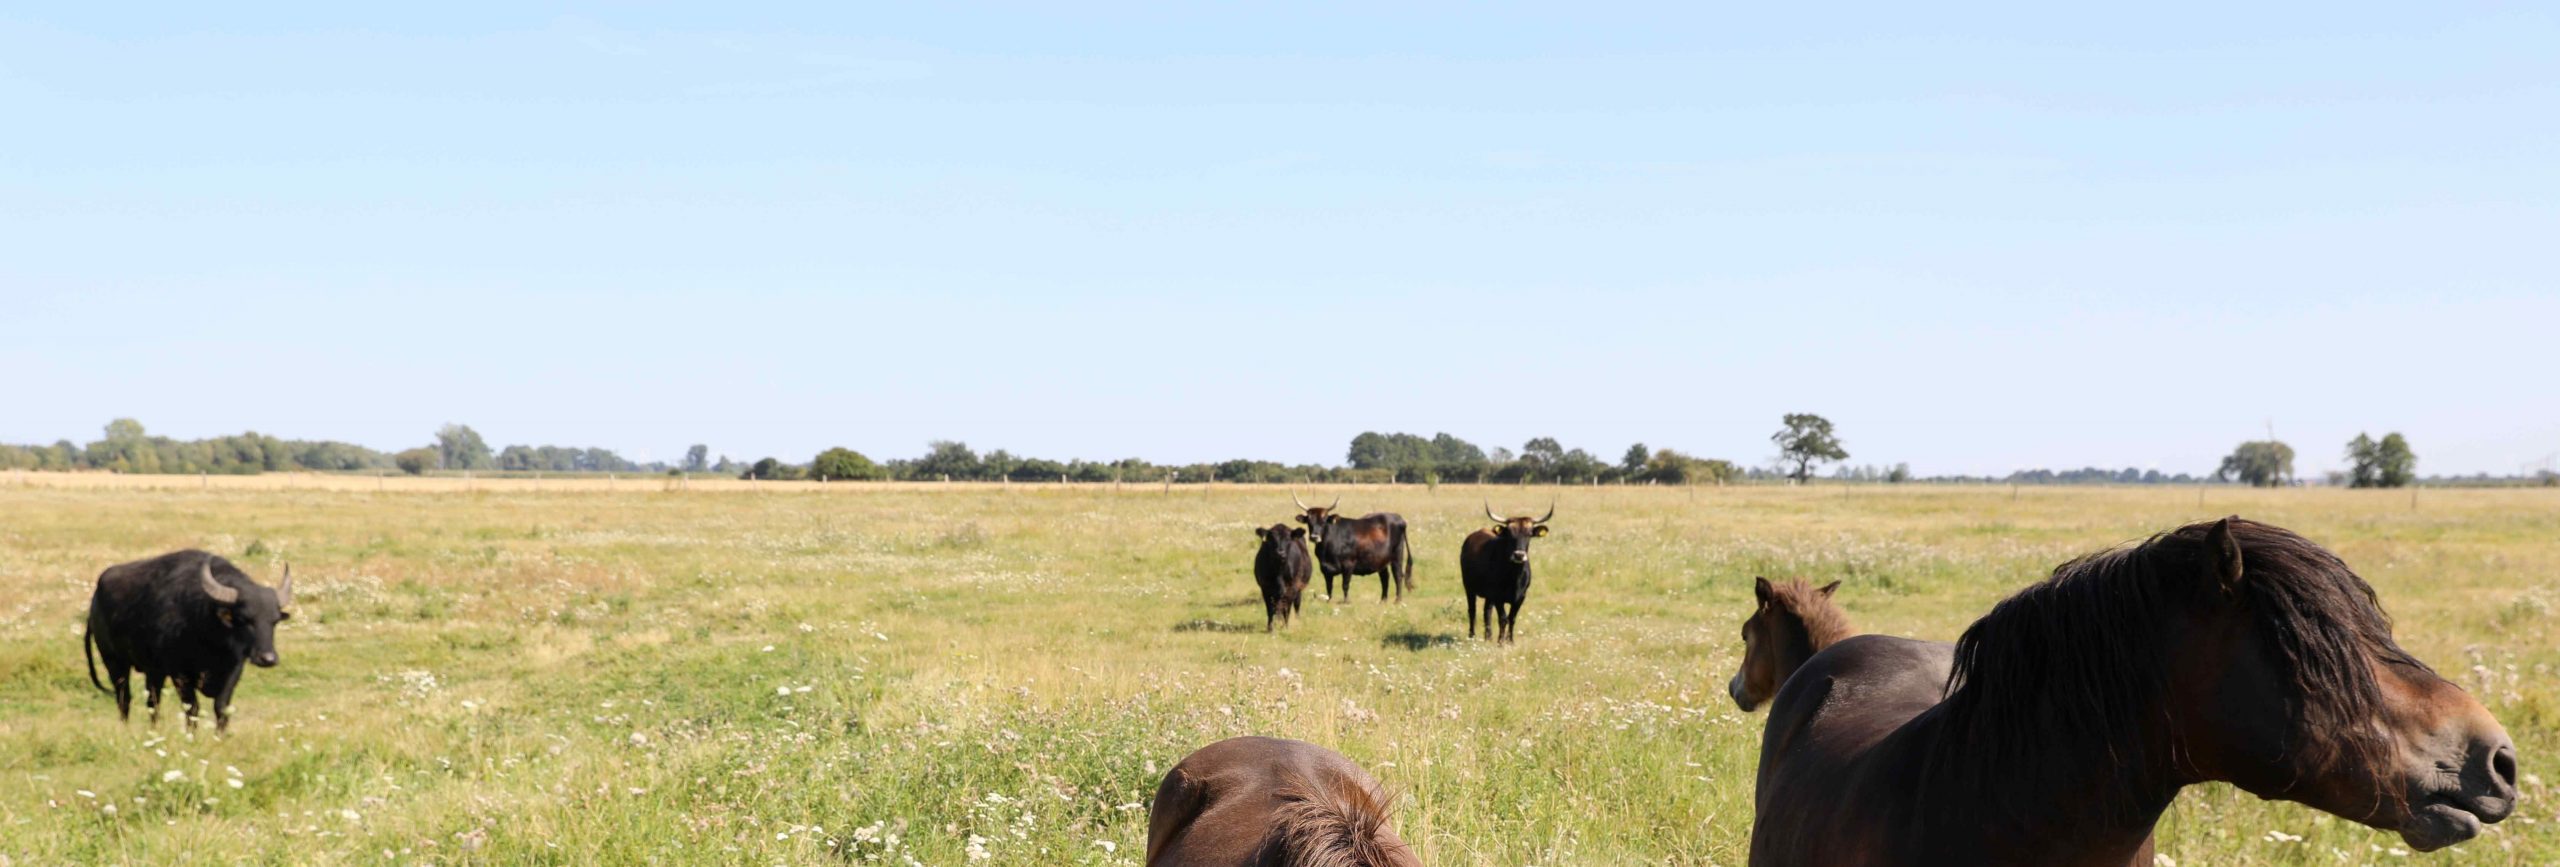 Bisons und Pferde auf einer großen Weide